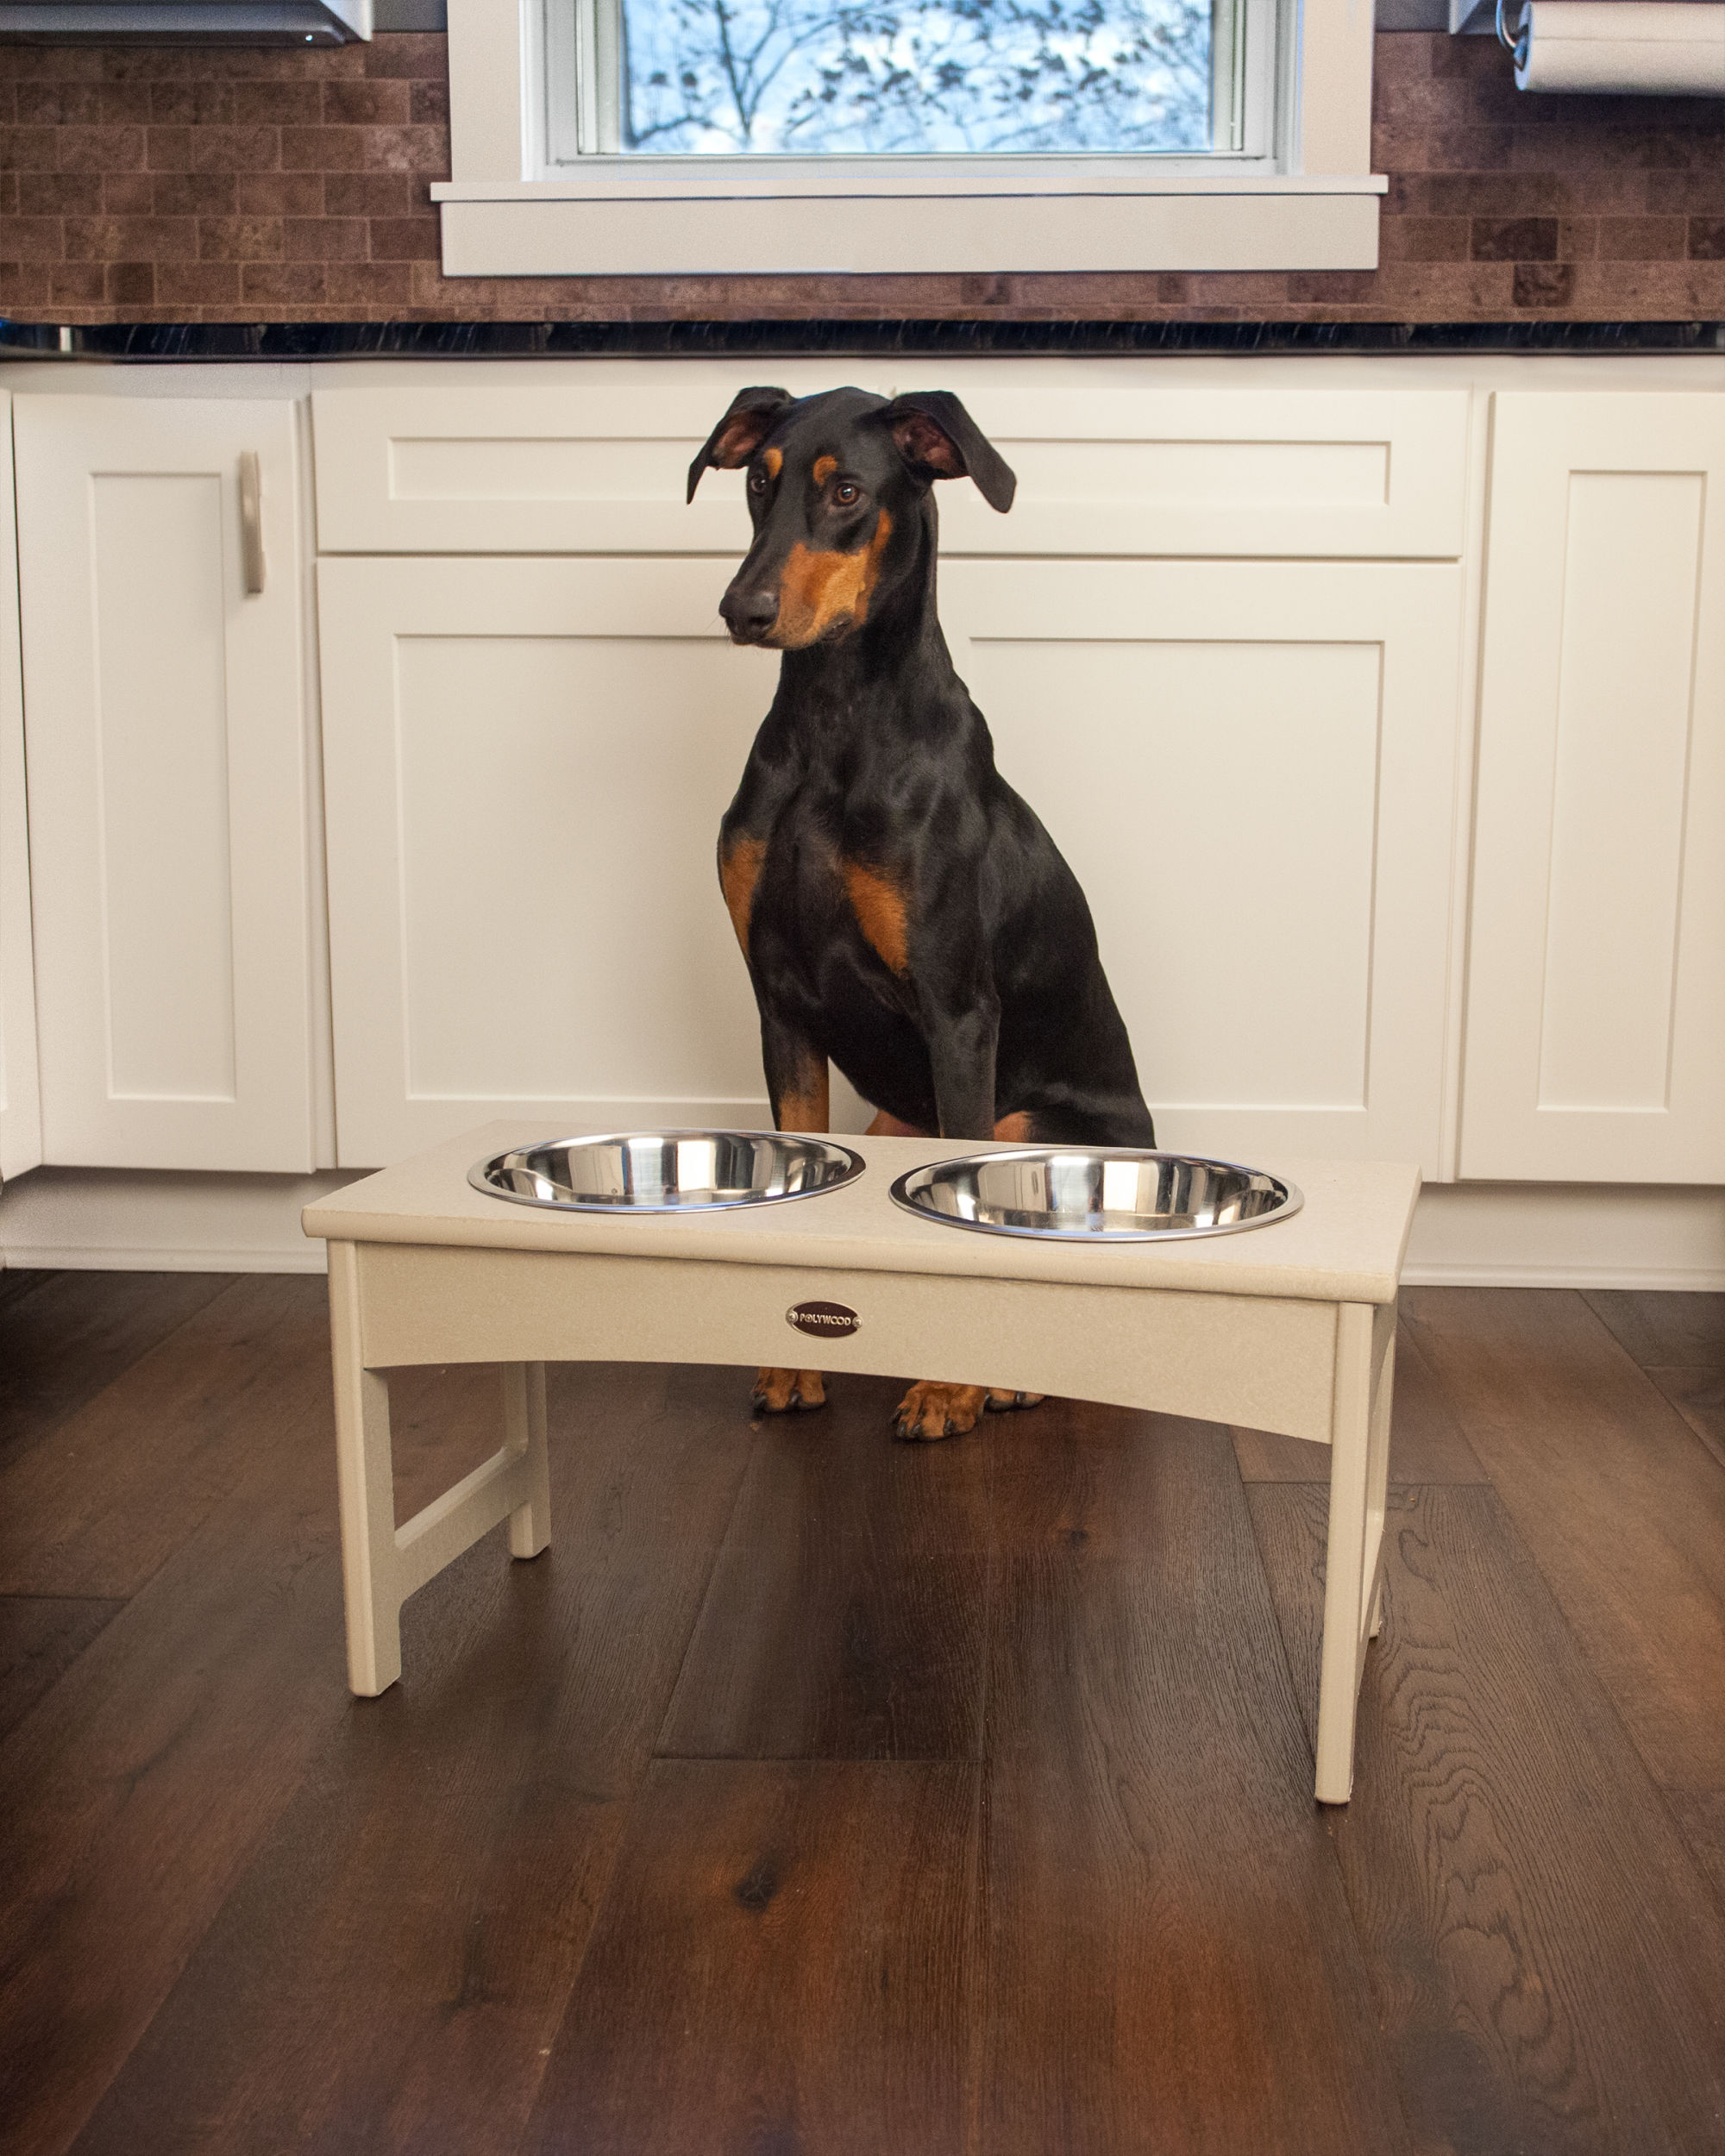 Elevated Dog Feeding Table for Large Size Dog / Raised Feeder for Big Dog / Large  Dog Bowls / Feeding Station With 2 Bowls / Black Frame 